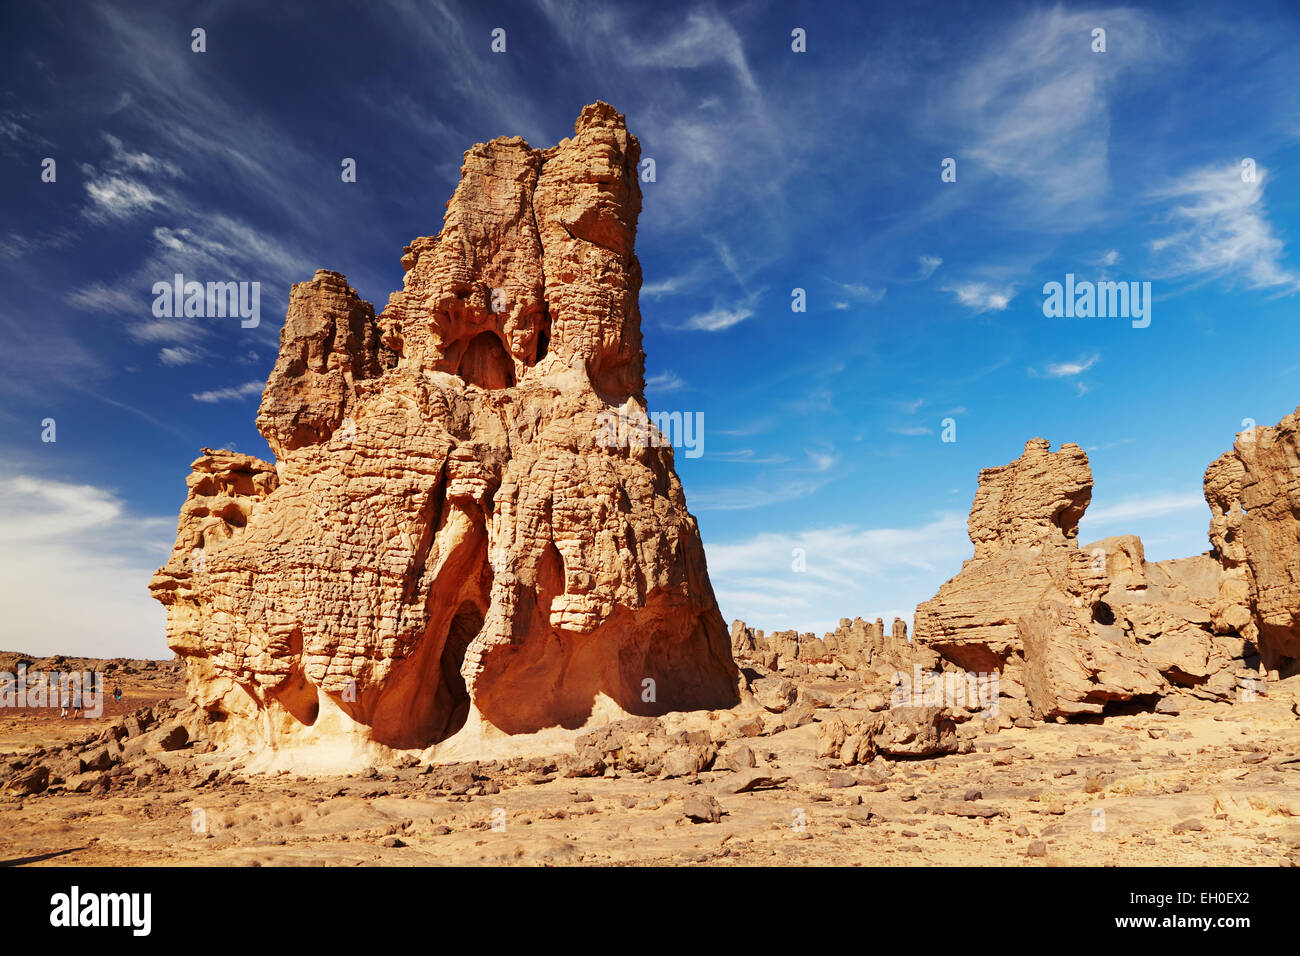 Les roches du désert du Sahara, Tassili N'Ajjer, Algérie Banque D'Images